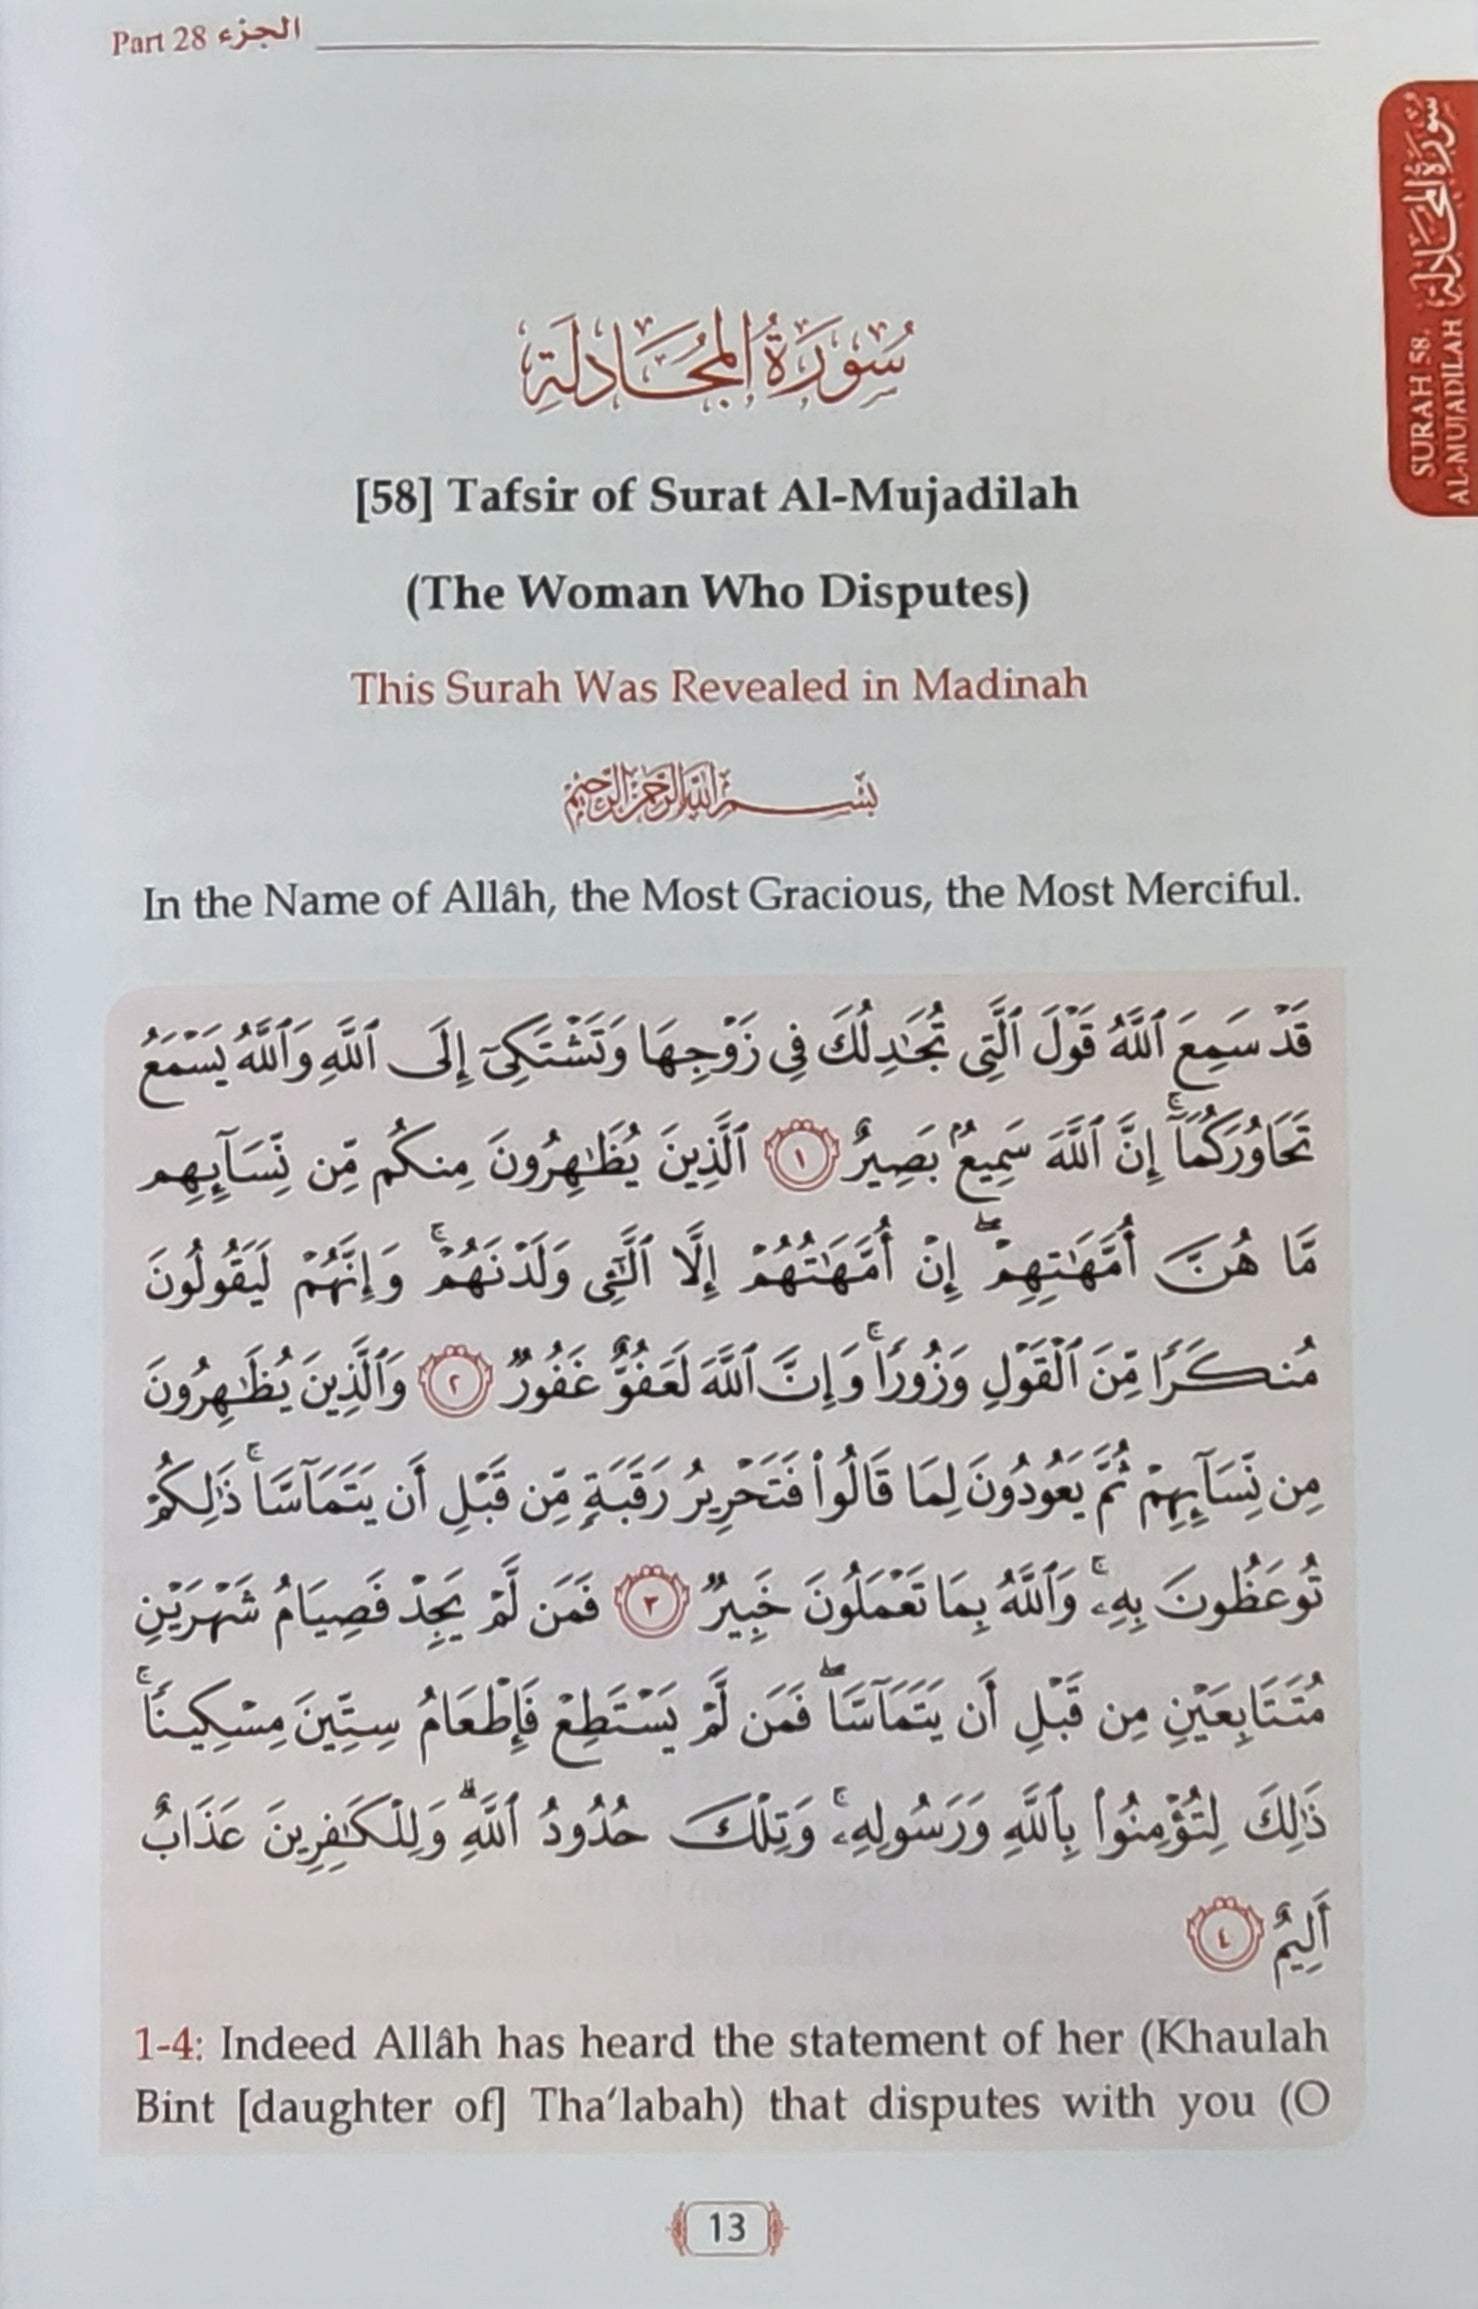 Tafsir As-Sa'di (Parts 28,29,30)